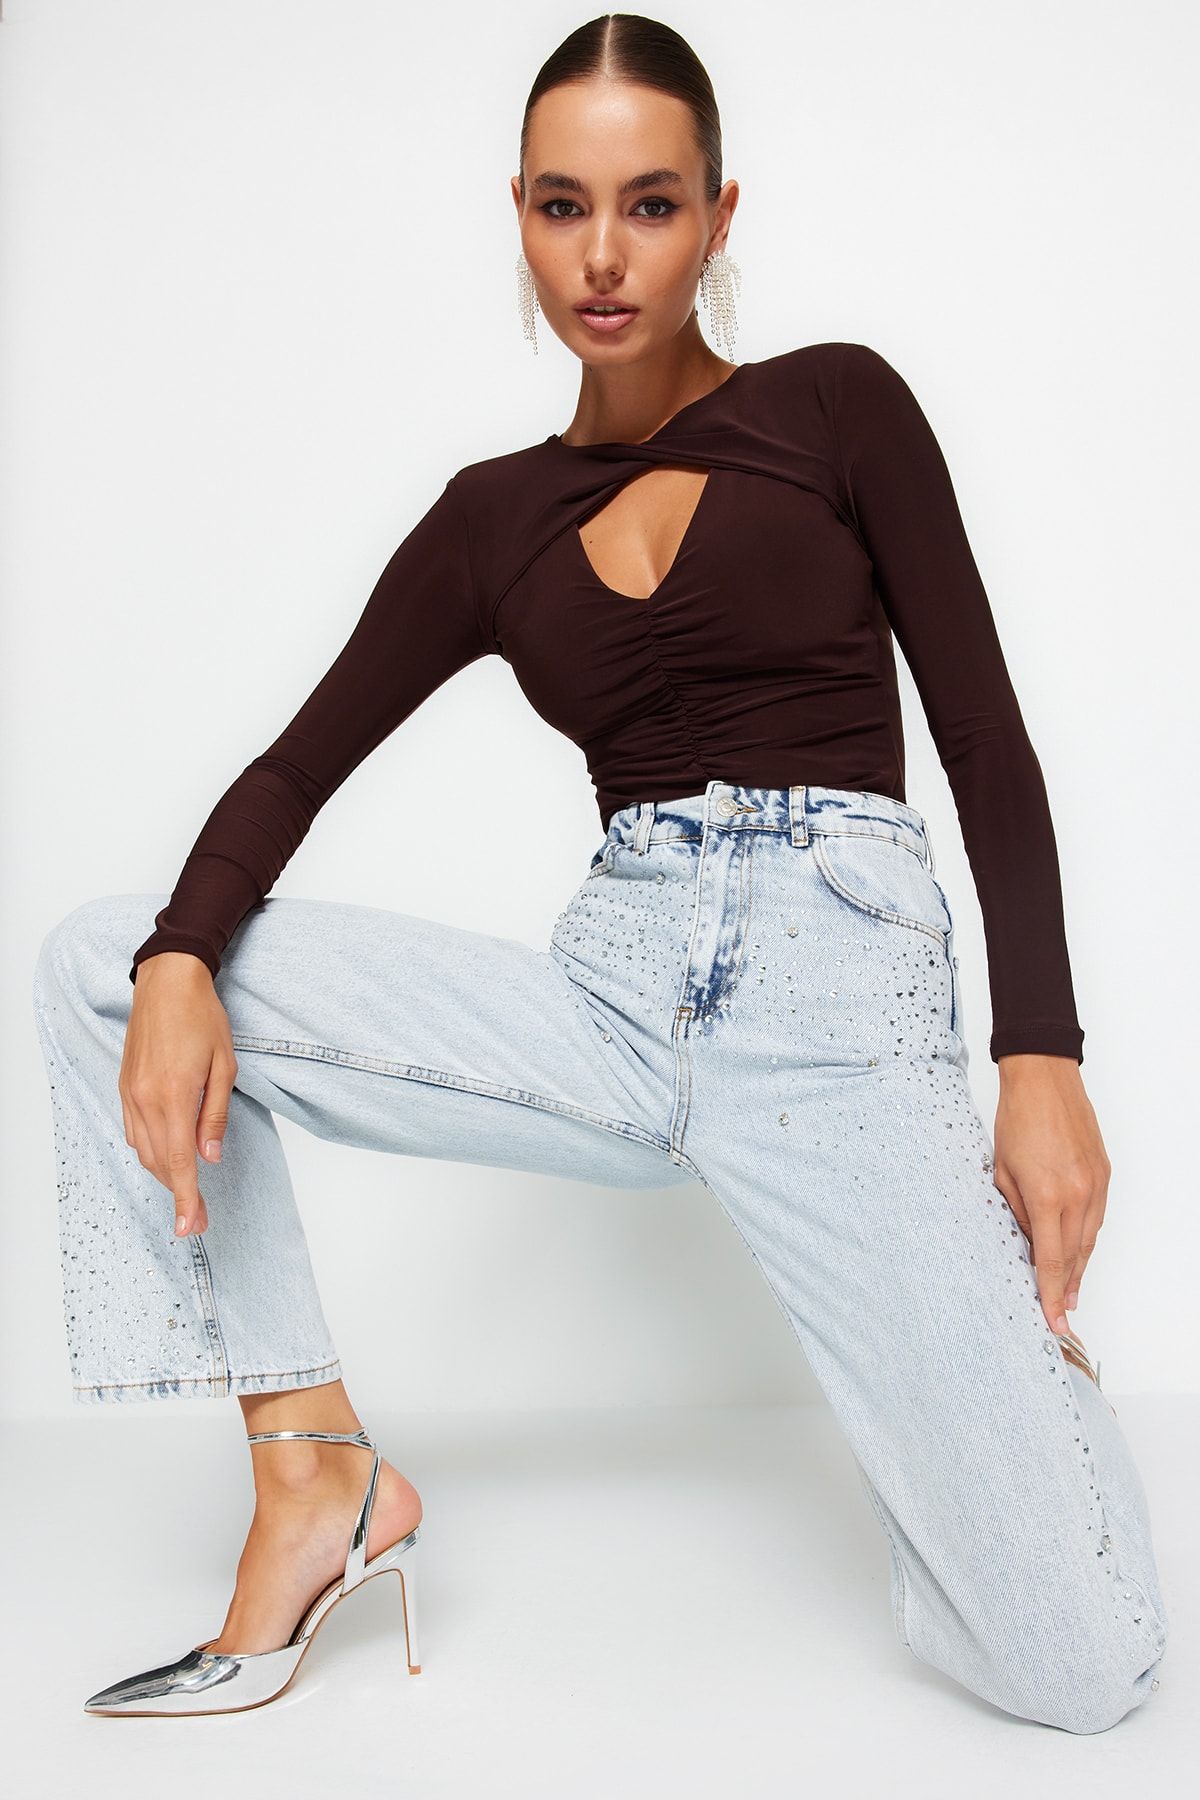 Buy Trendyol Knitted Bodysuit in Dark Brown 2024 Online